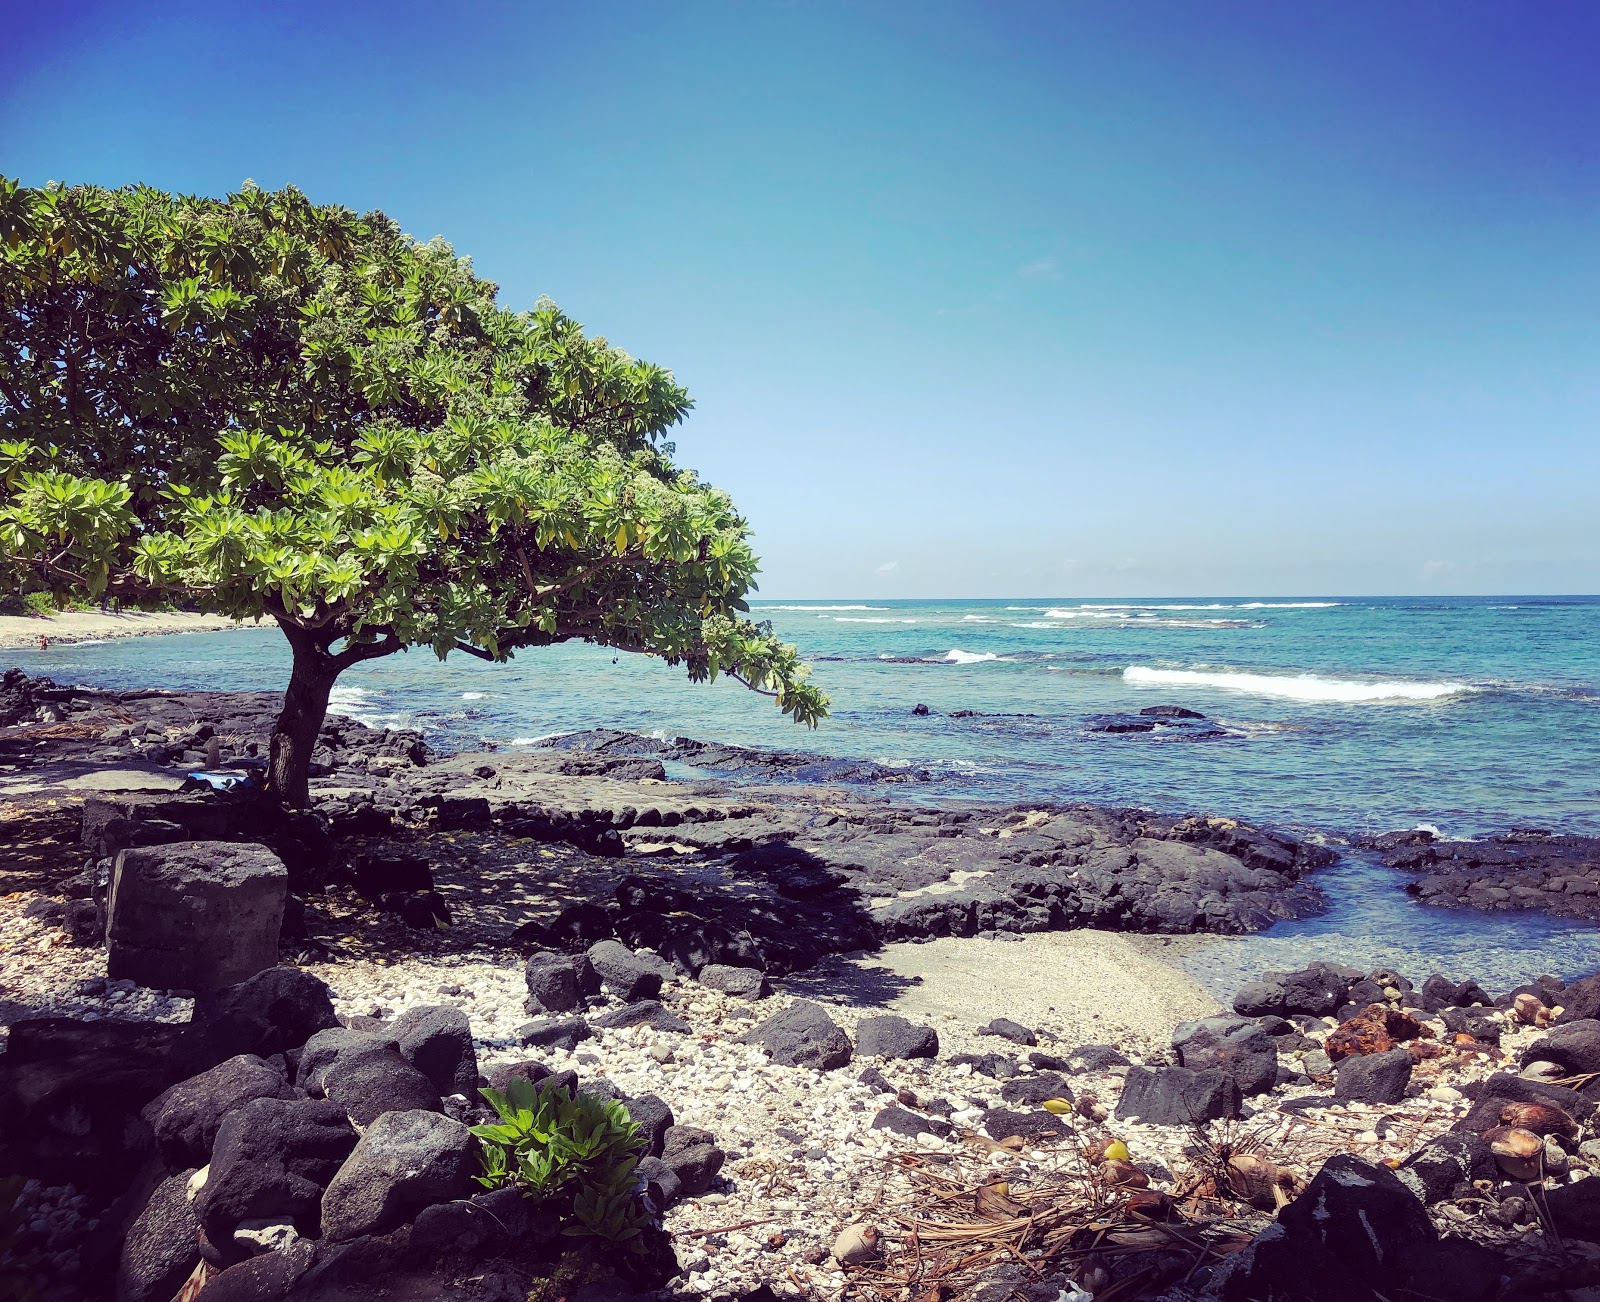 Fotografie cu Ke'Ei Beach - locul popular printre cunoscătorii de relaxare